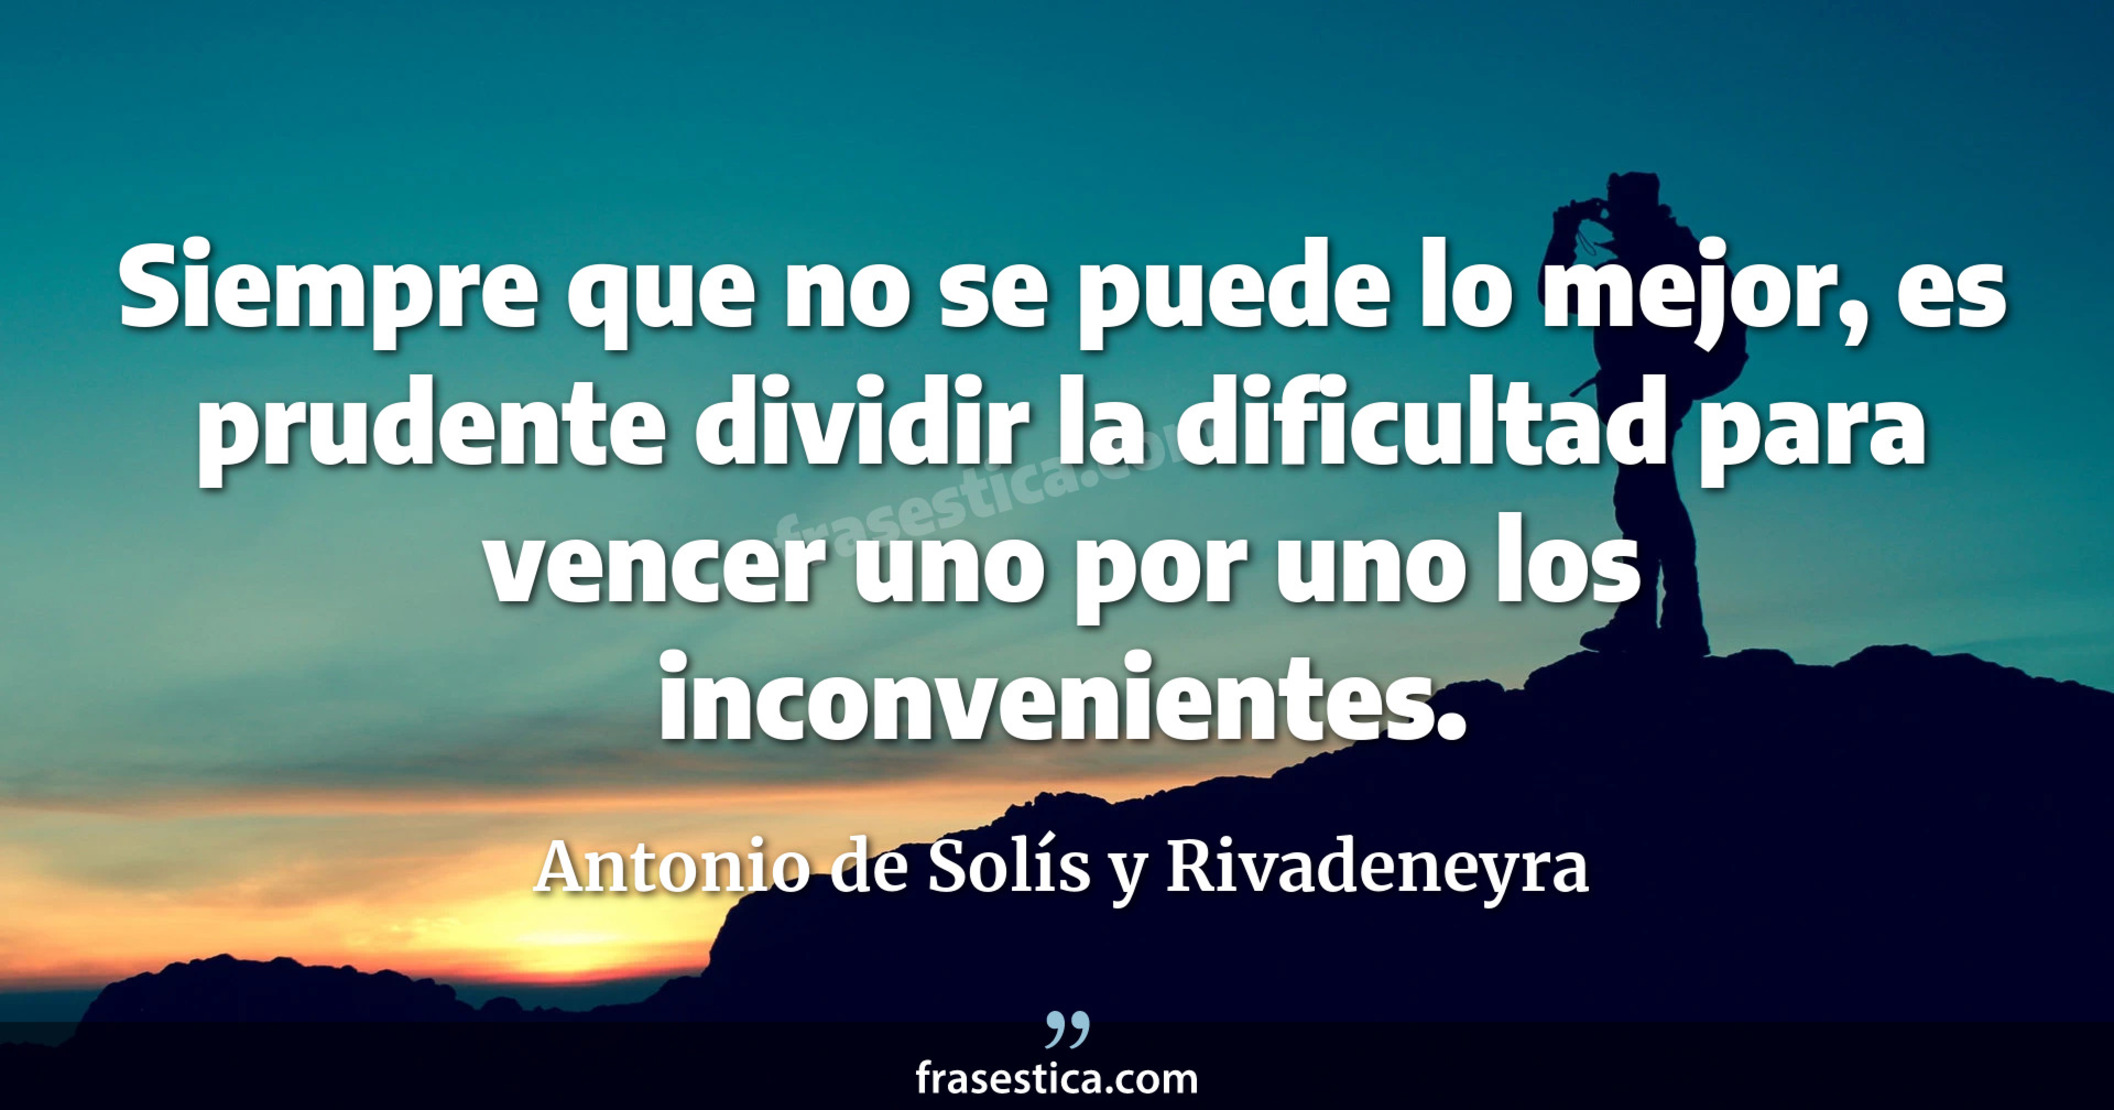 Siempre que no se puede lo mejor, es prudente dividir la dificultad para vencer uno por uno los inconvenientes. - Antonio de Solís y Rivadeneyra